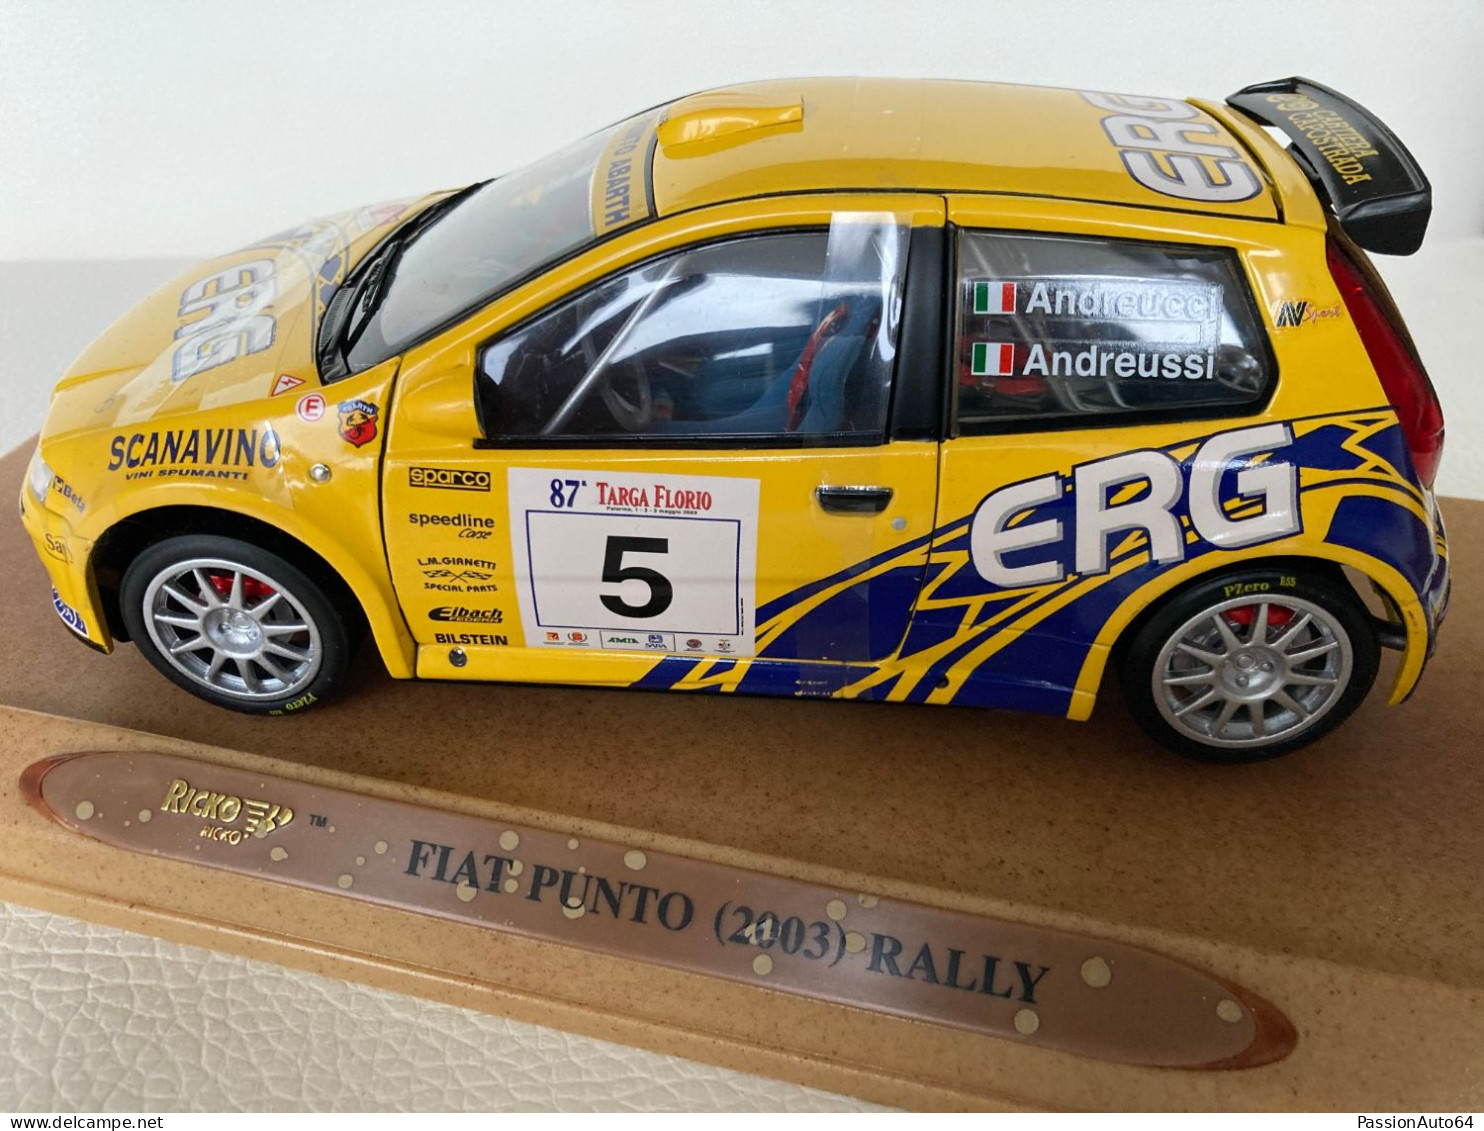 1/18 Ricko Fiat Punto Rally 2003 no Burago Solido Norev Otto Mobile Anson Spark Autoart Kyosho Minichamps BBR CMC Exoto